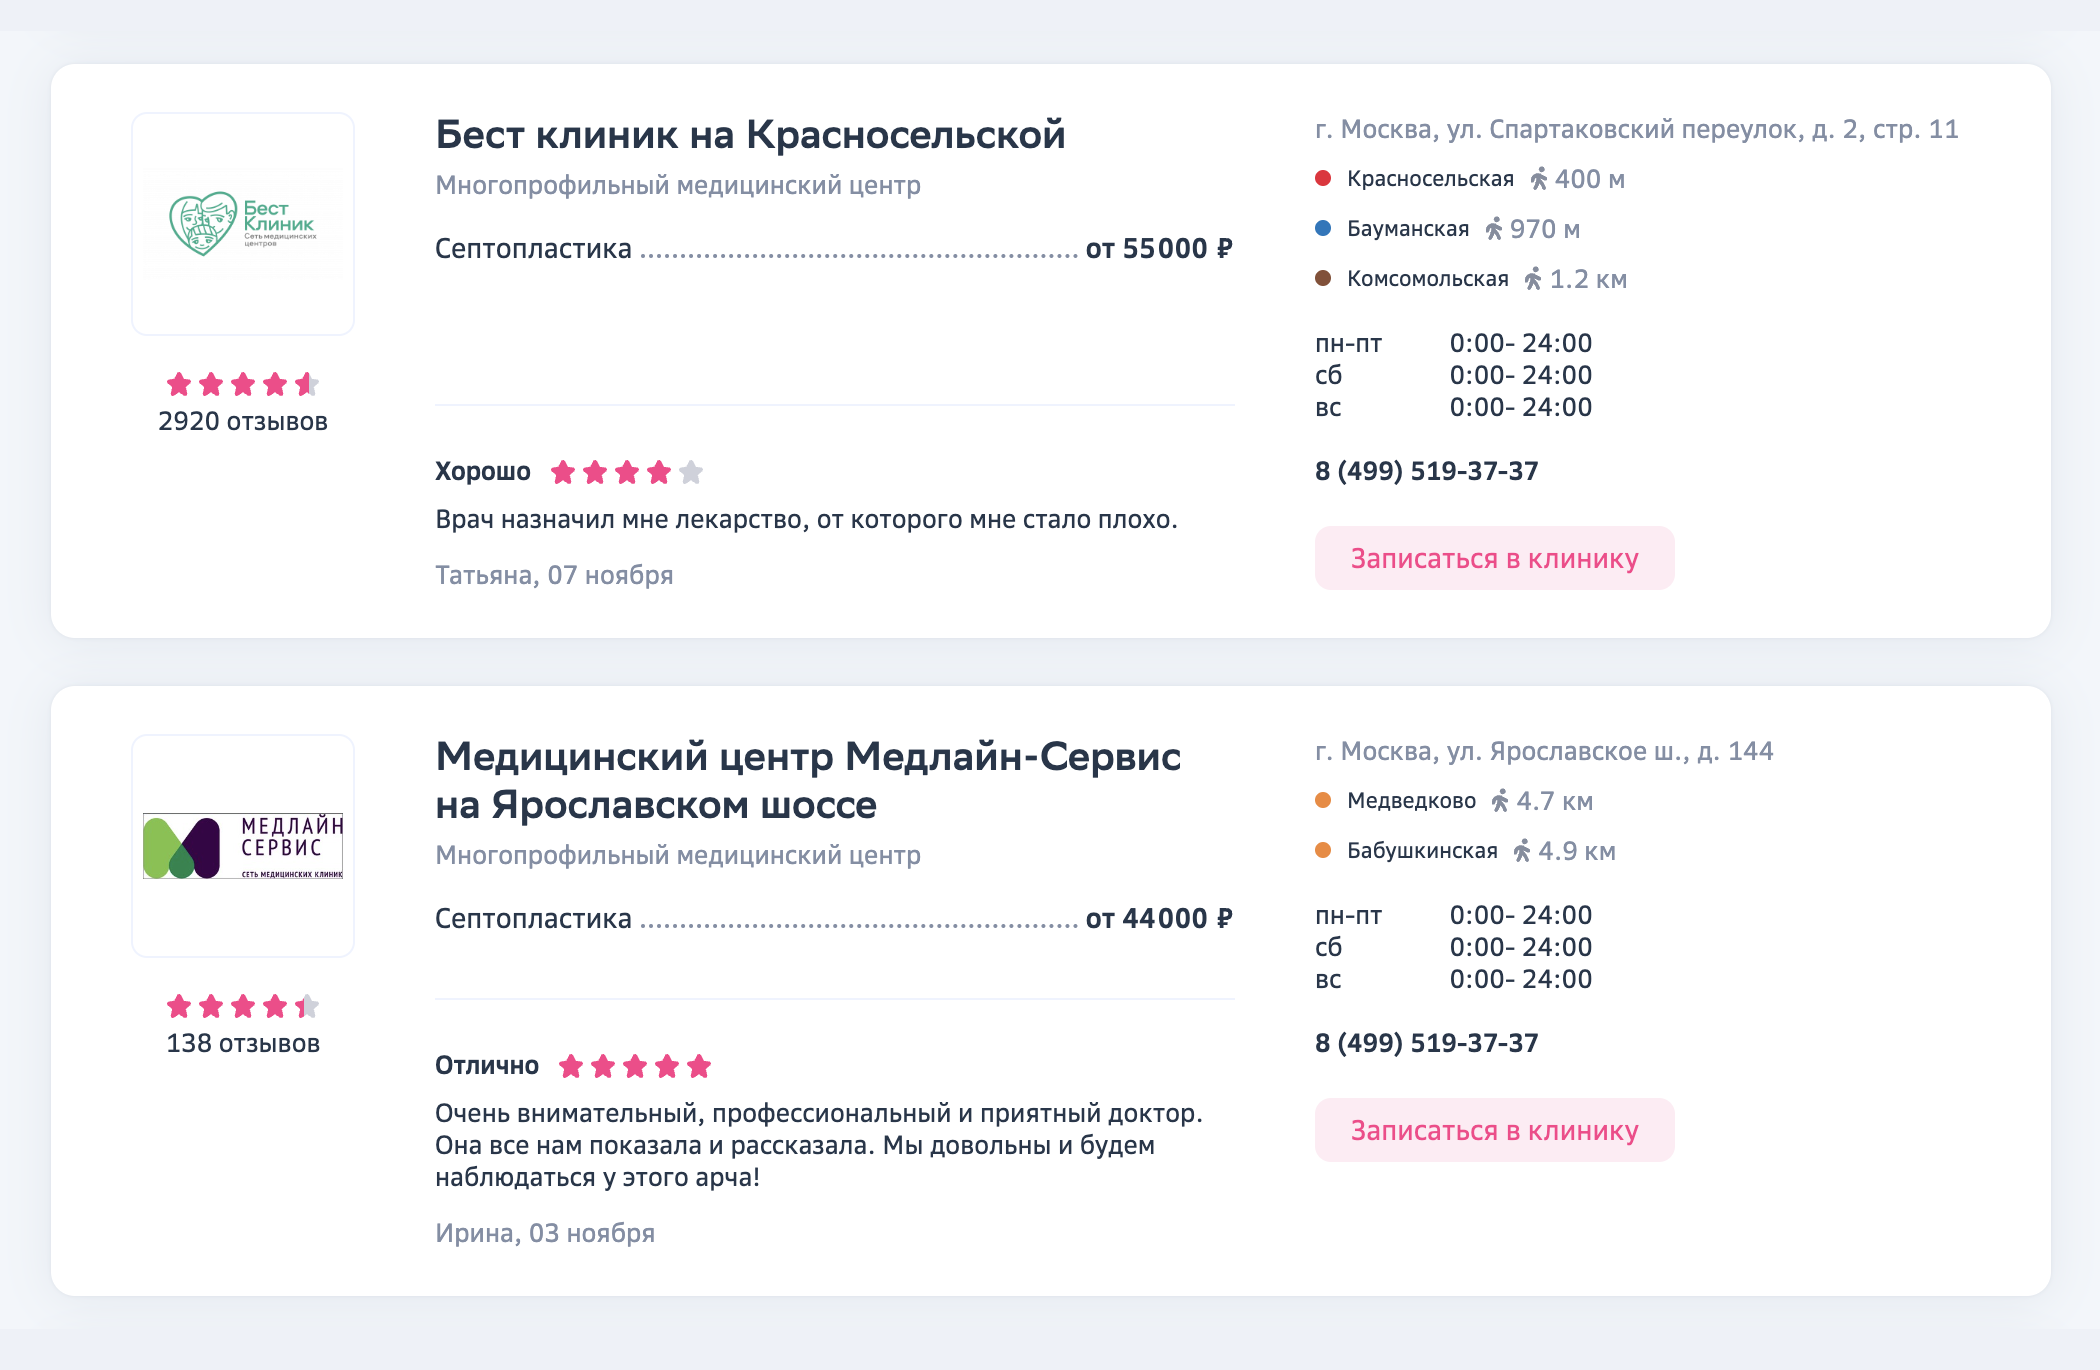 Цены на септопластику в частных клиниках Москвы. Источник: docdoc.ru